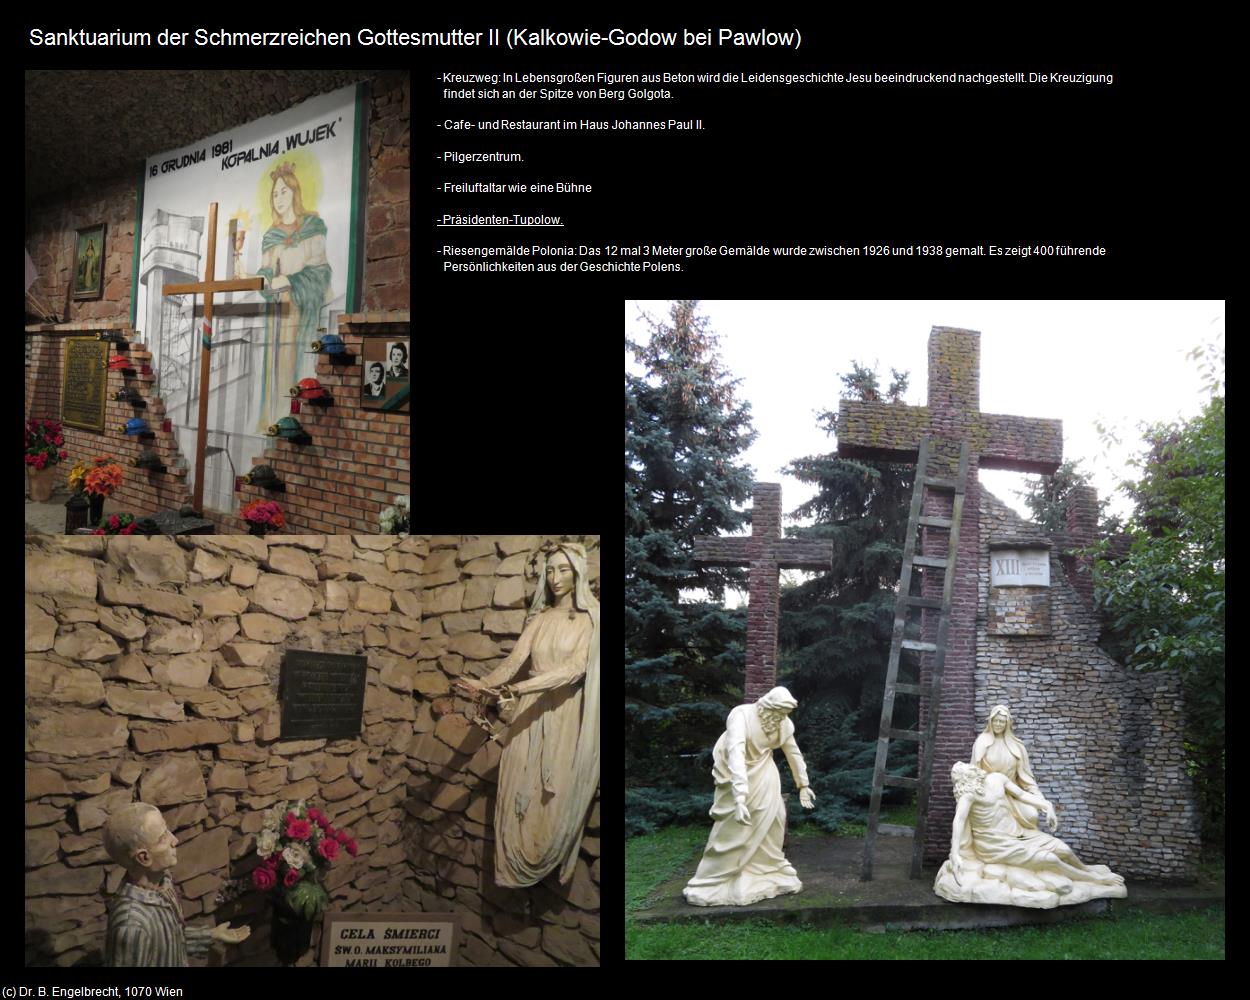 Sanktuarium der Schmerzreichen Gottesmutter II (Kalkowie-Godow bei Pawlow) in POLEN-Galizien(c)B.Engelbrecht